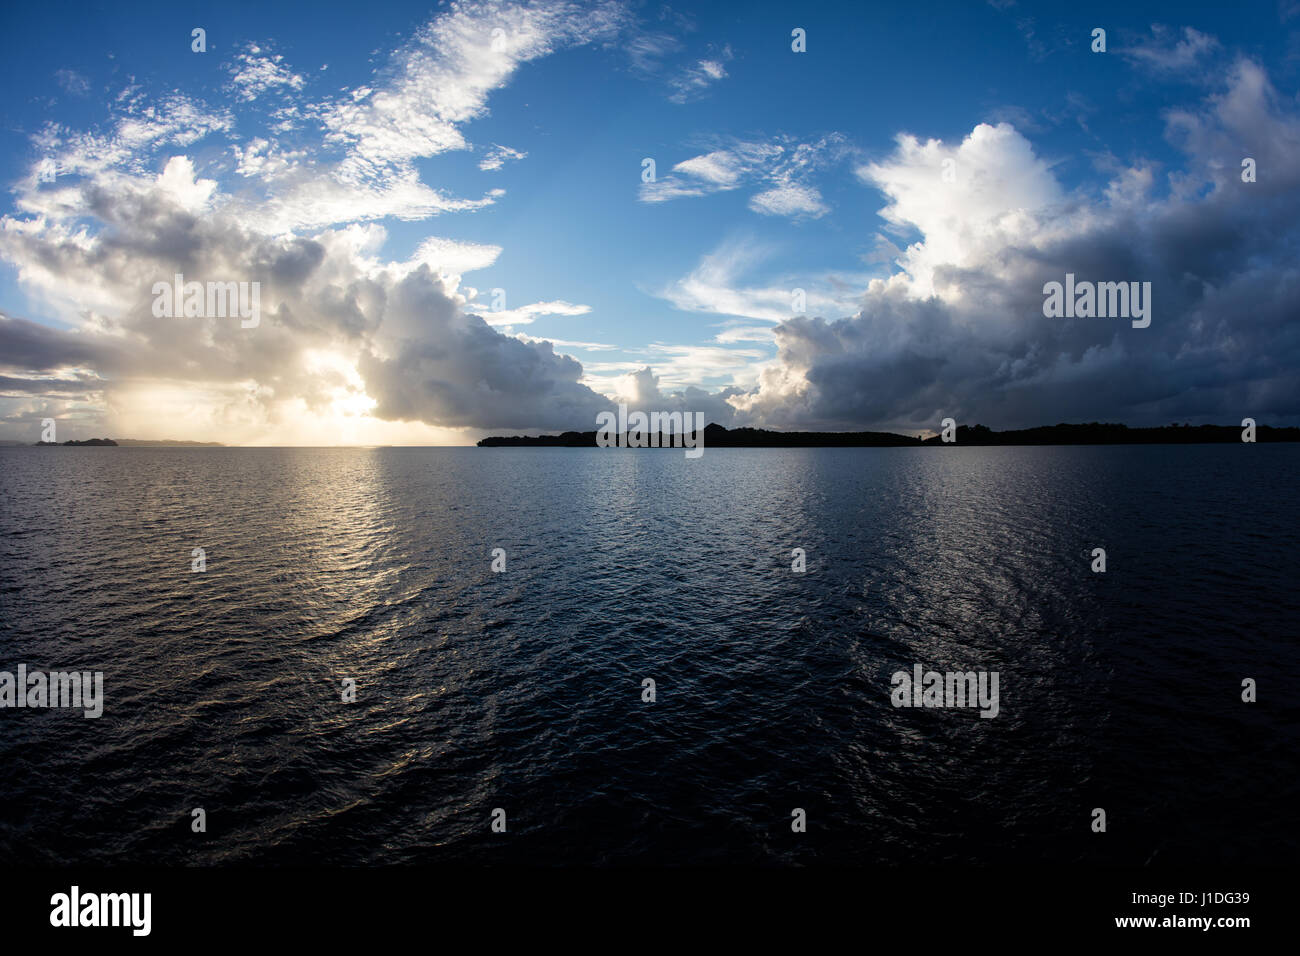 Ein schöner Sonnenaufgang erscheint über tropische Lagune Wasser in die Republik Palau. Dieses mikronesischen Land ist ein beliebtes Urlaubsziel. Stockfoto